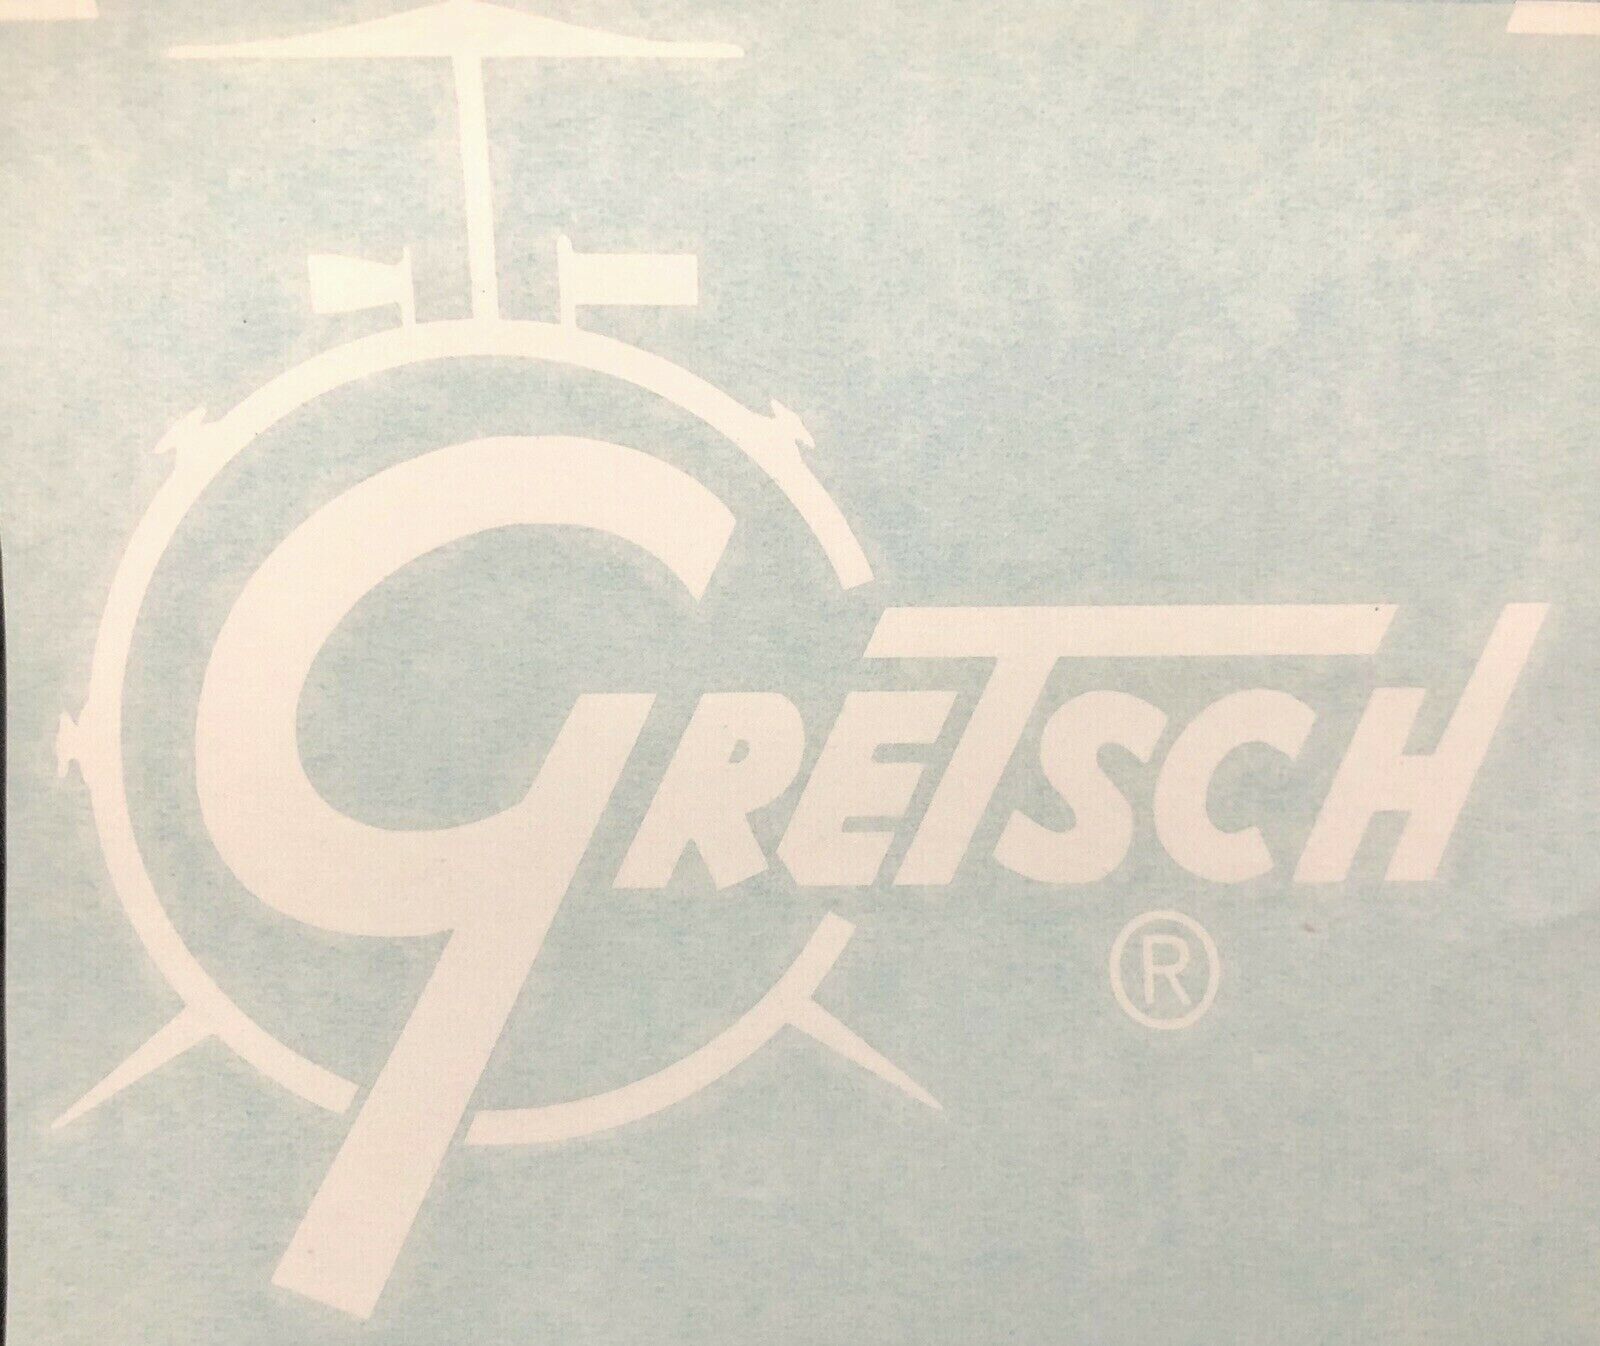 Gretsch Bass Drum White Logo - Stick On-heavy Vinyl